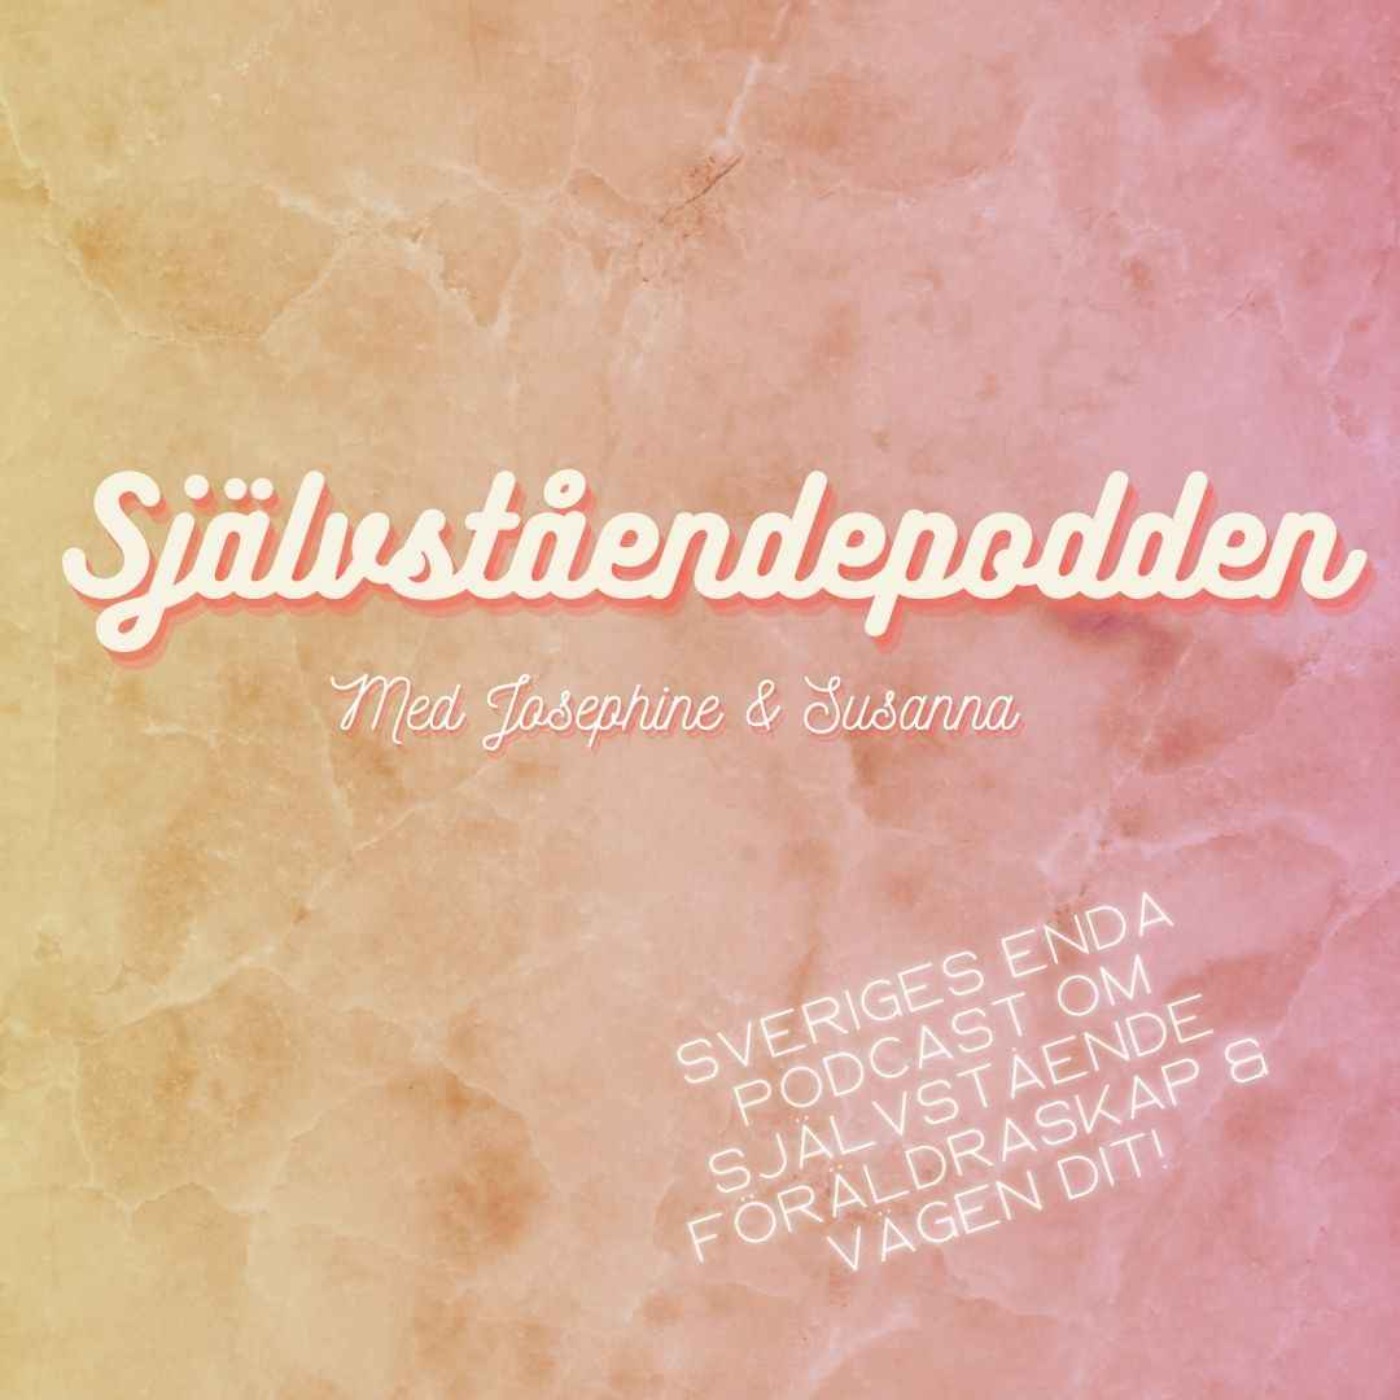 cover art for Avsnitt 30 "Susanna är gravid!"